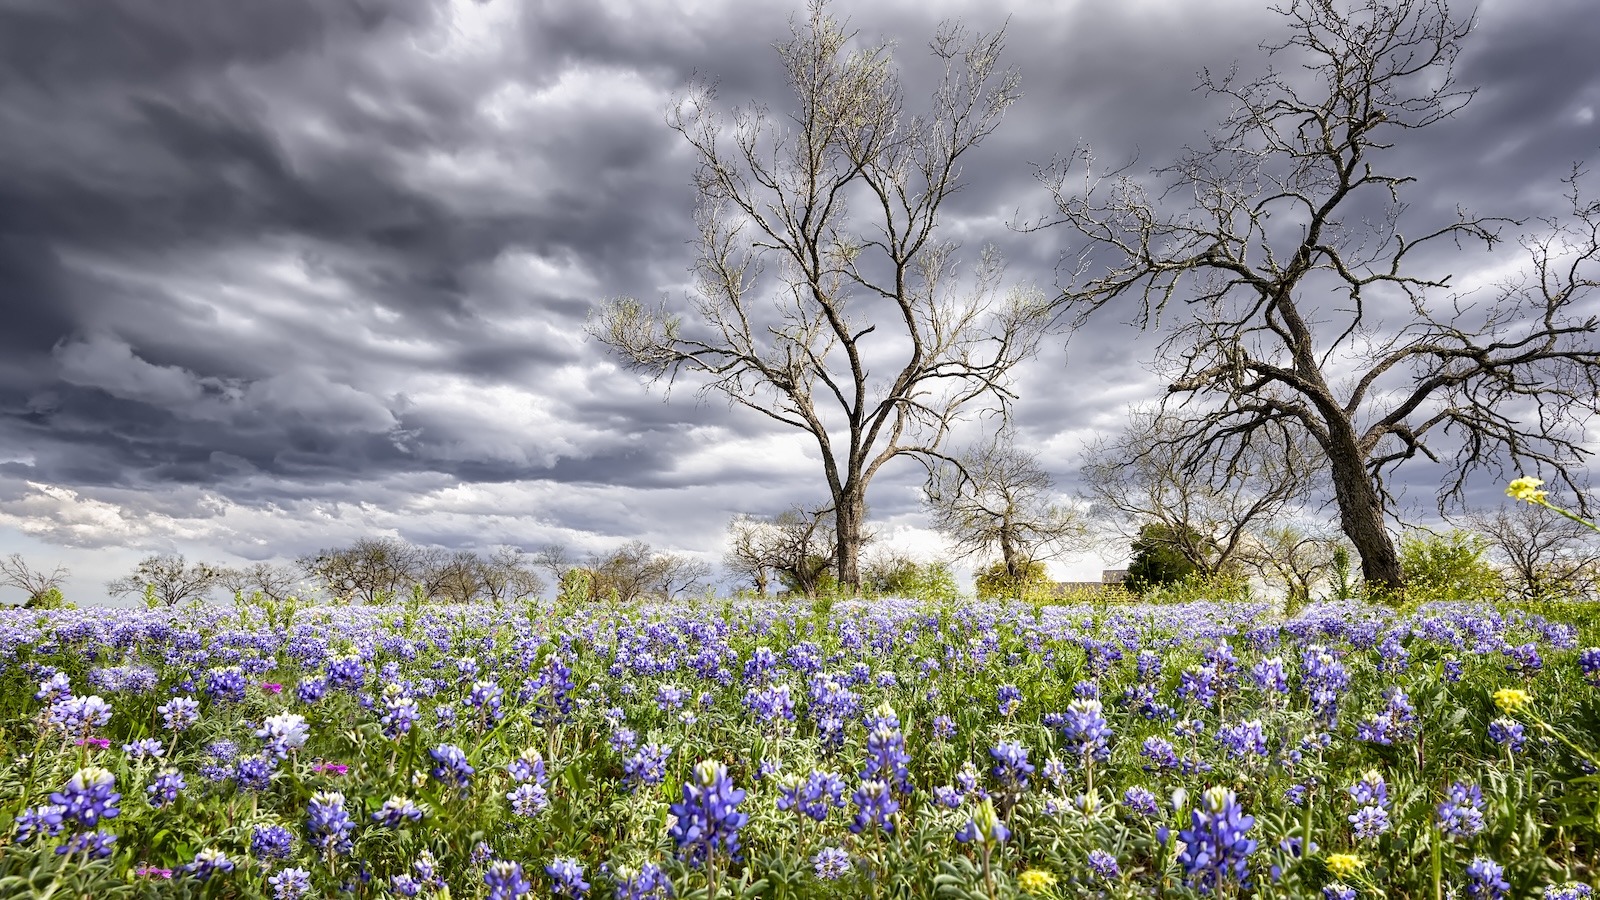 Central Texas Spring Storm Season 